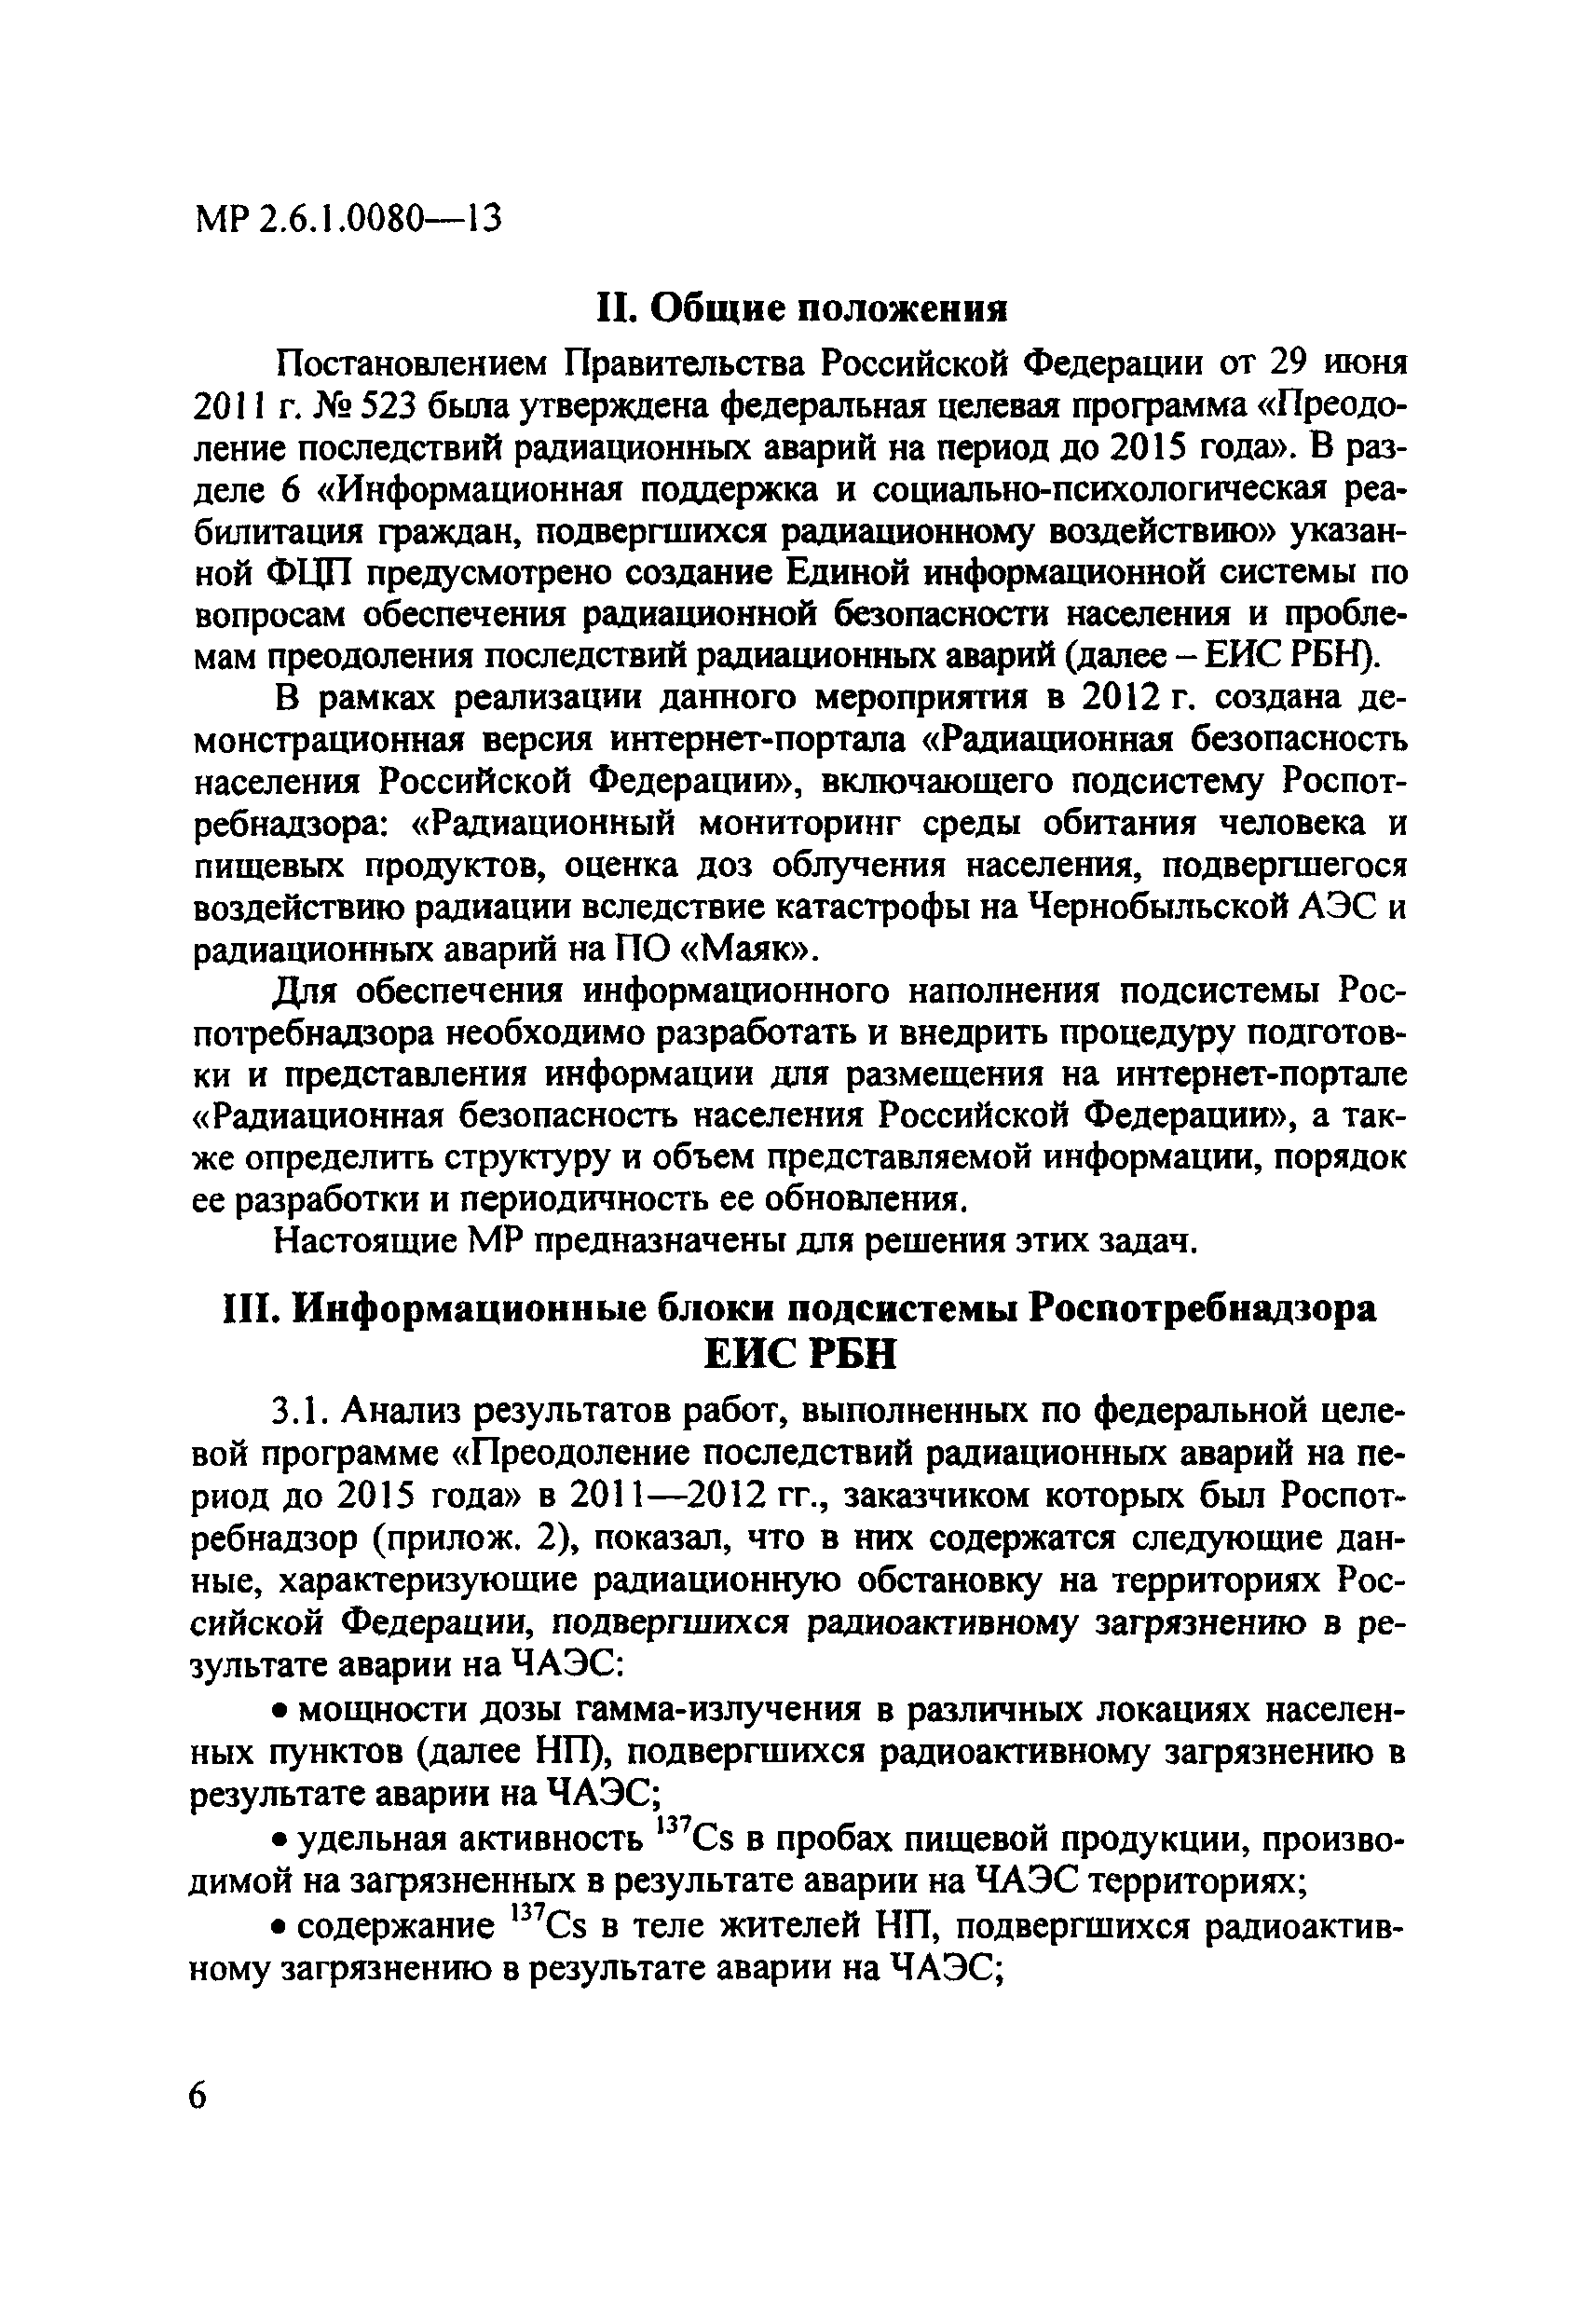 МР 2.6.1.0080-13